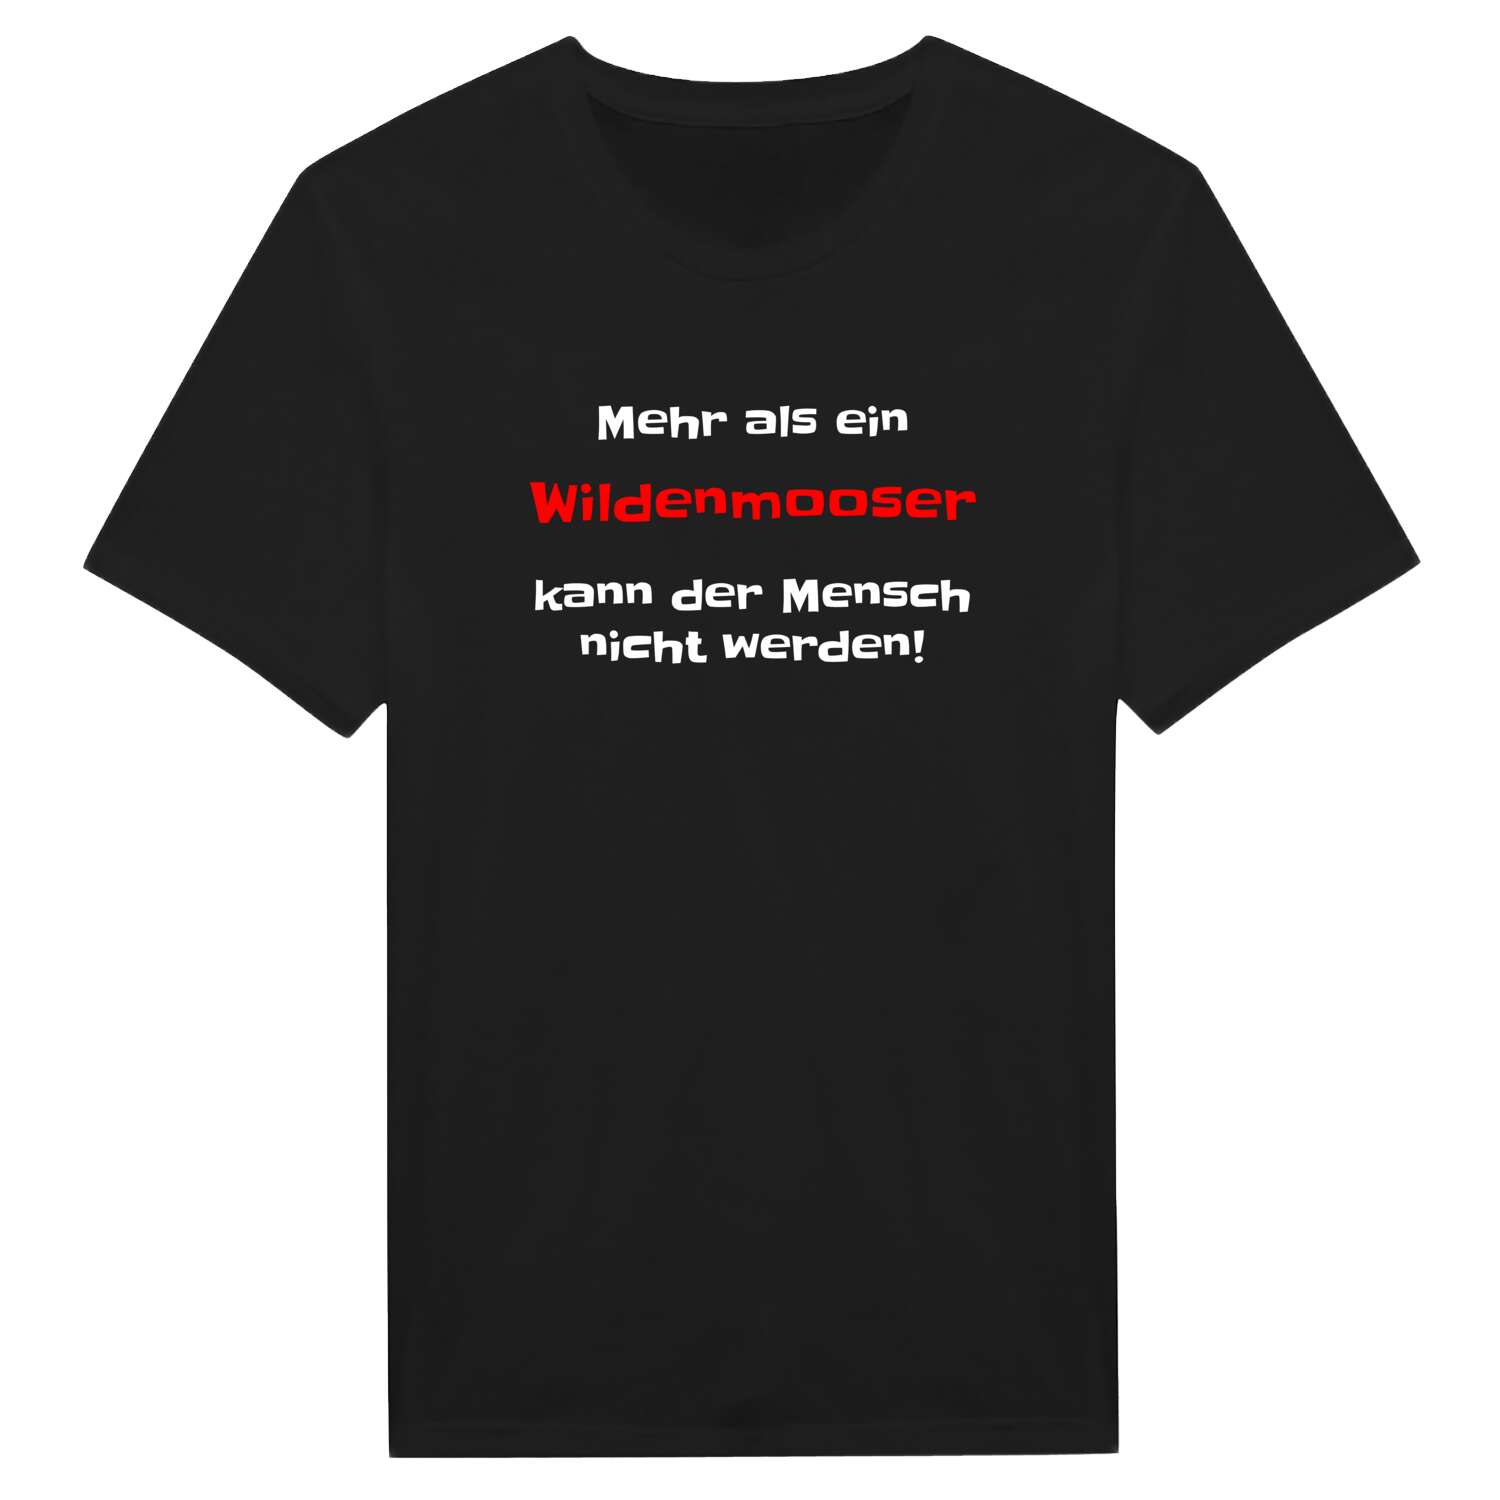 Wildenmoos T-Shirt »Mehr als ein«